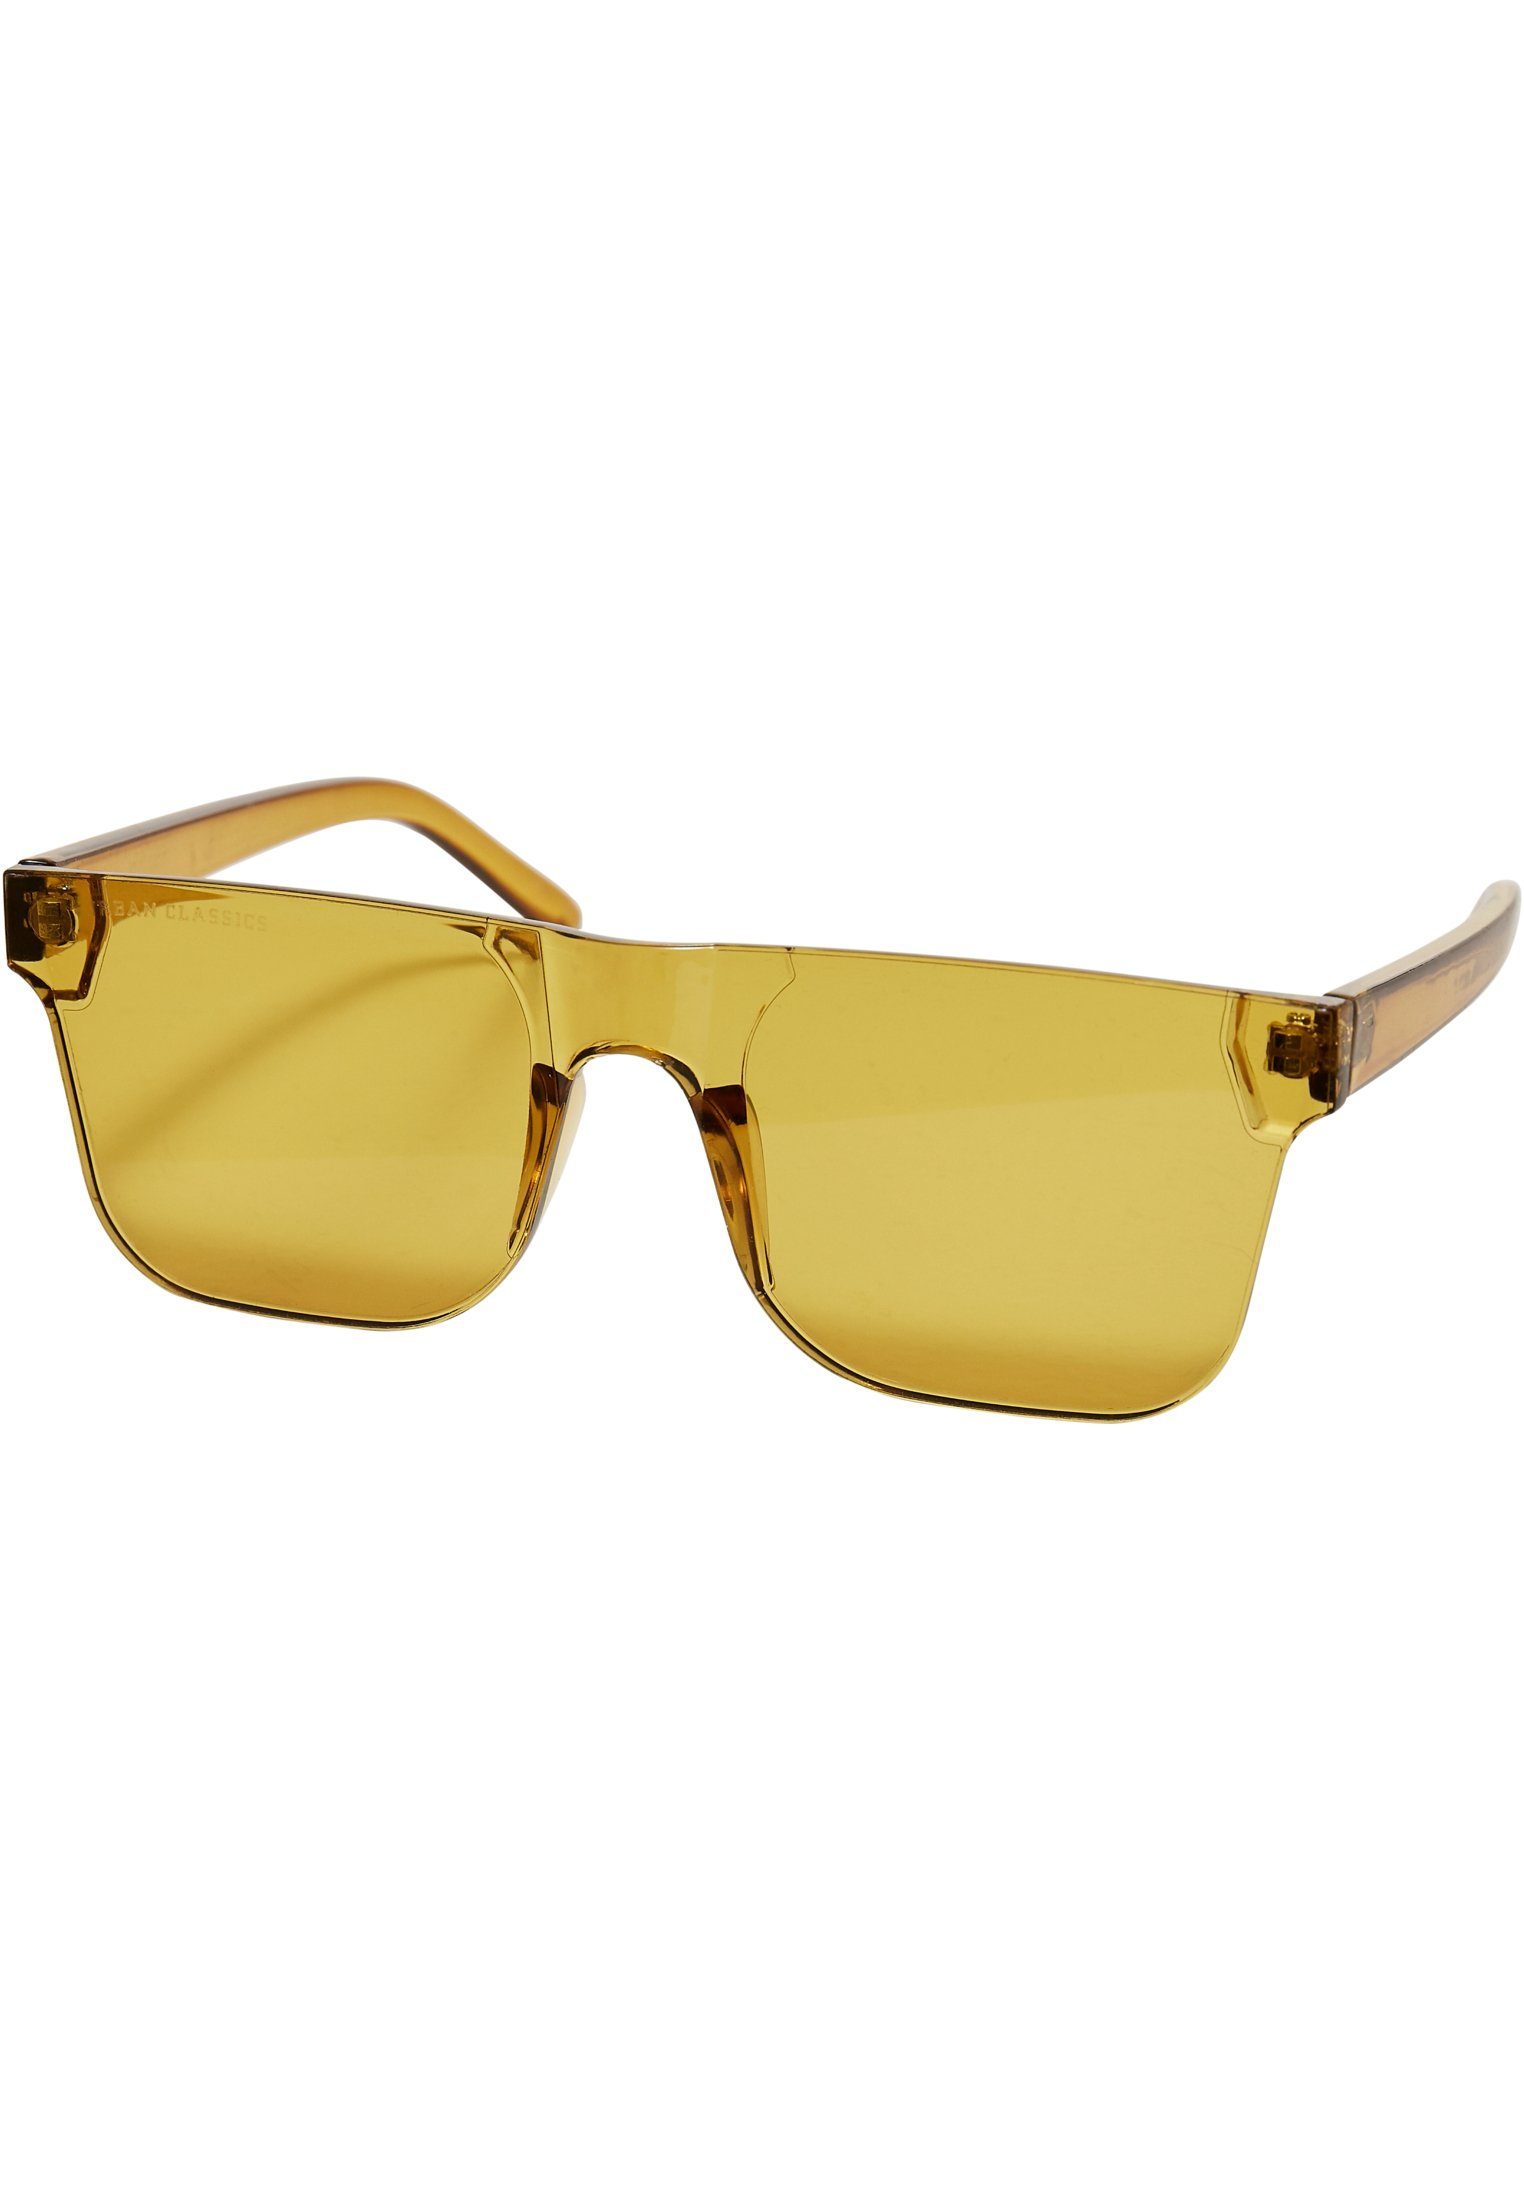 URBAN CLASSICS Sonnenbrille Unisex Sunglasses Honolulu With Case, Große  Sonnenbrille mit gerader Oberlinie und Halbrand